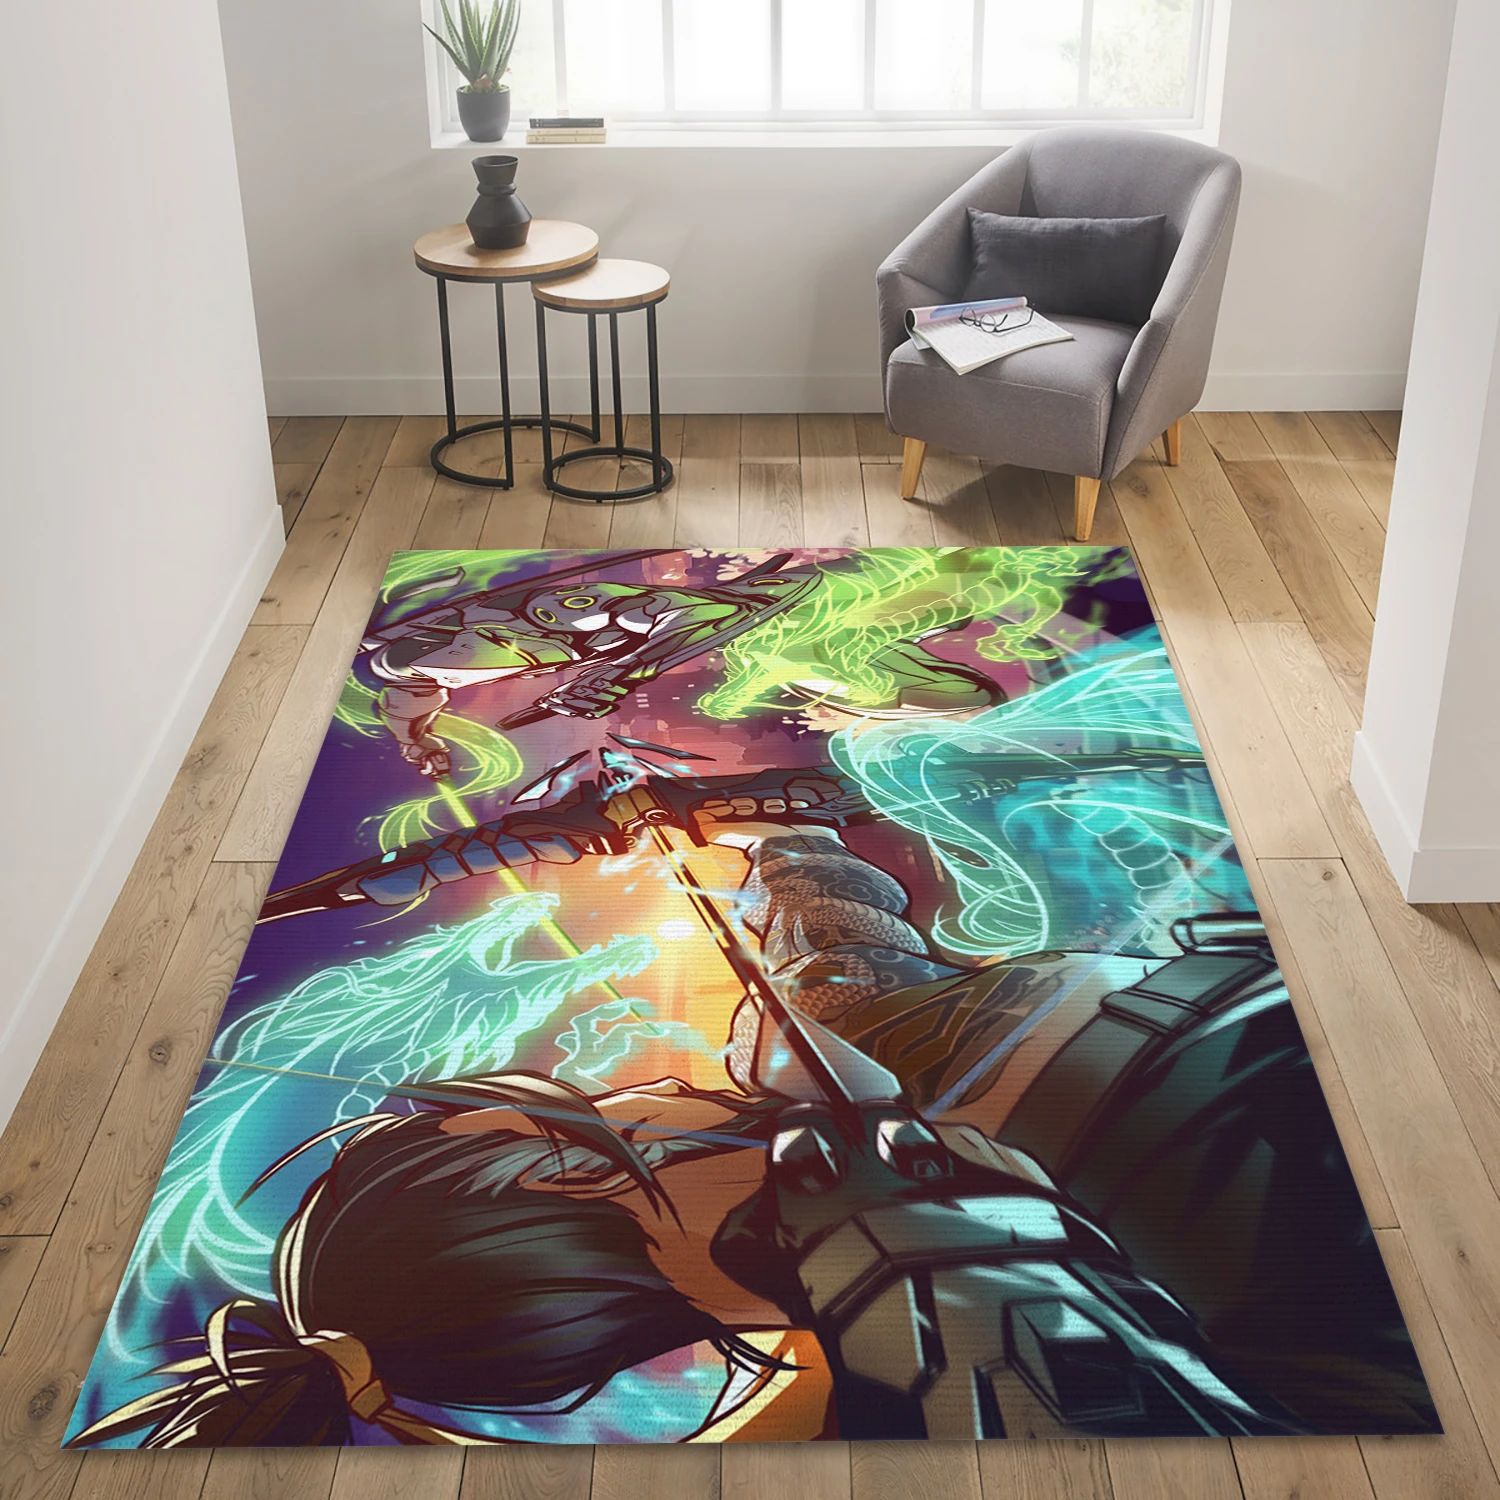 Hanzo Genji Overwatch Game Area Rug Carpet, Bedroom Rug - Christmas Gift Decor - Indoor Outdoor Rugs